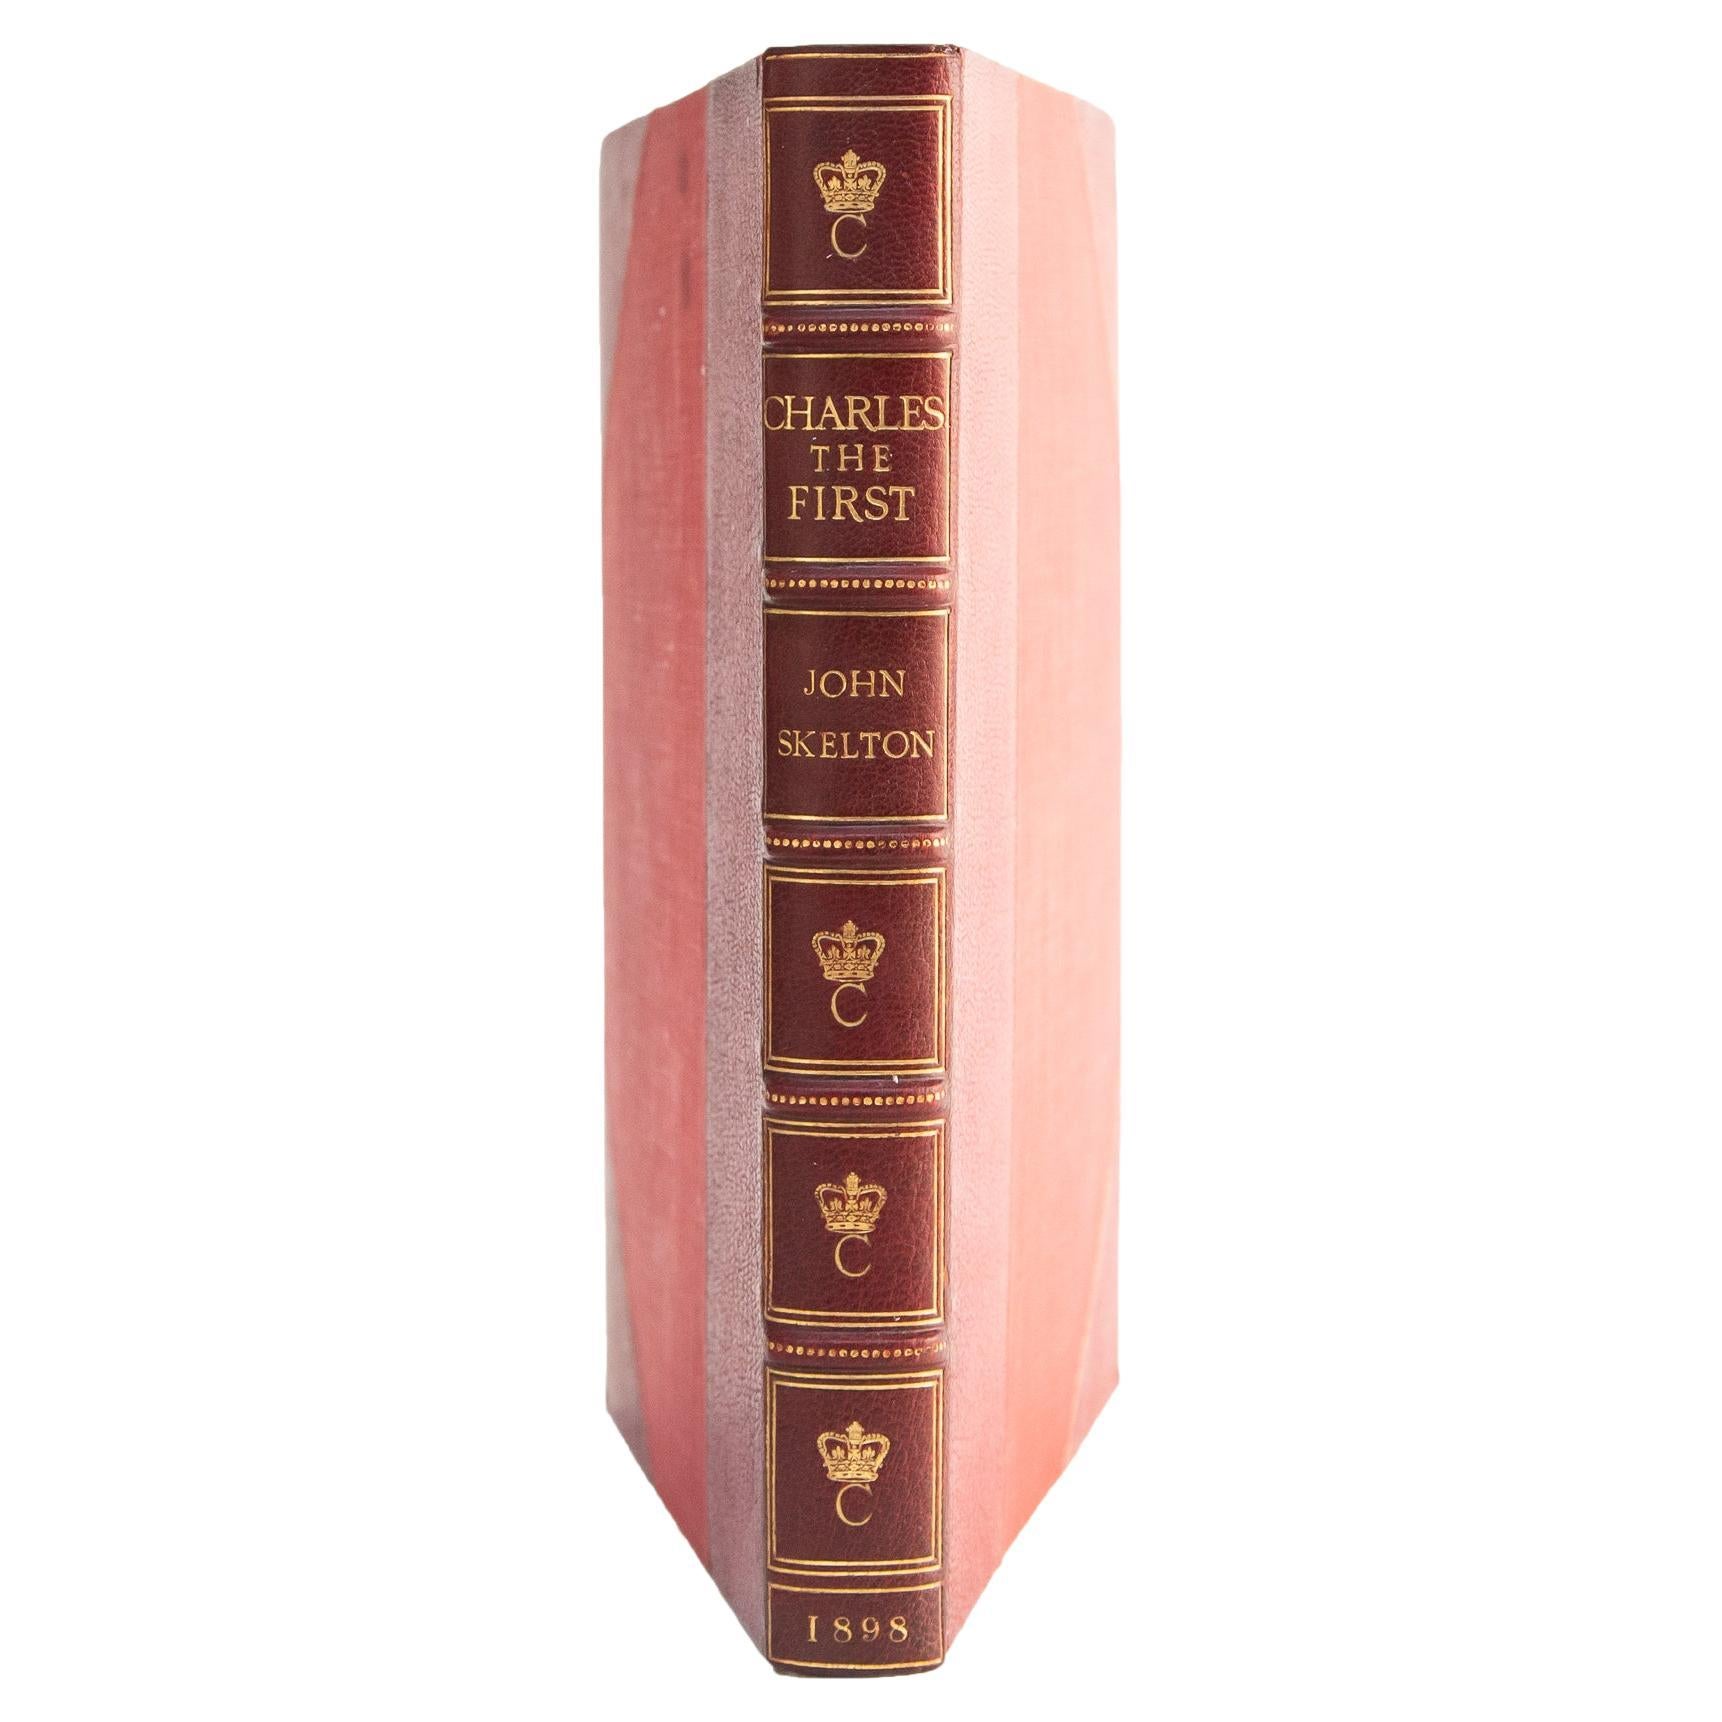 1 Volume. Sir John Skelton, Charles I